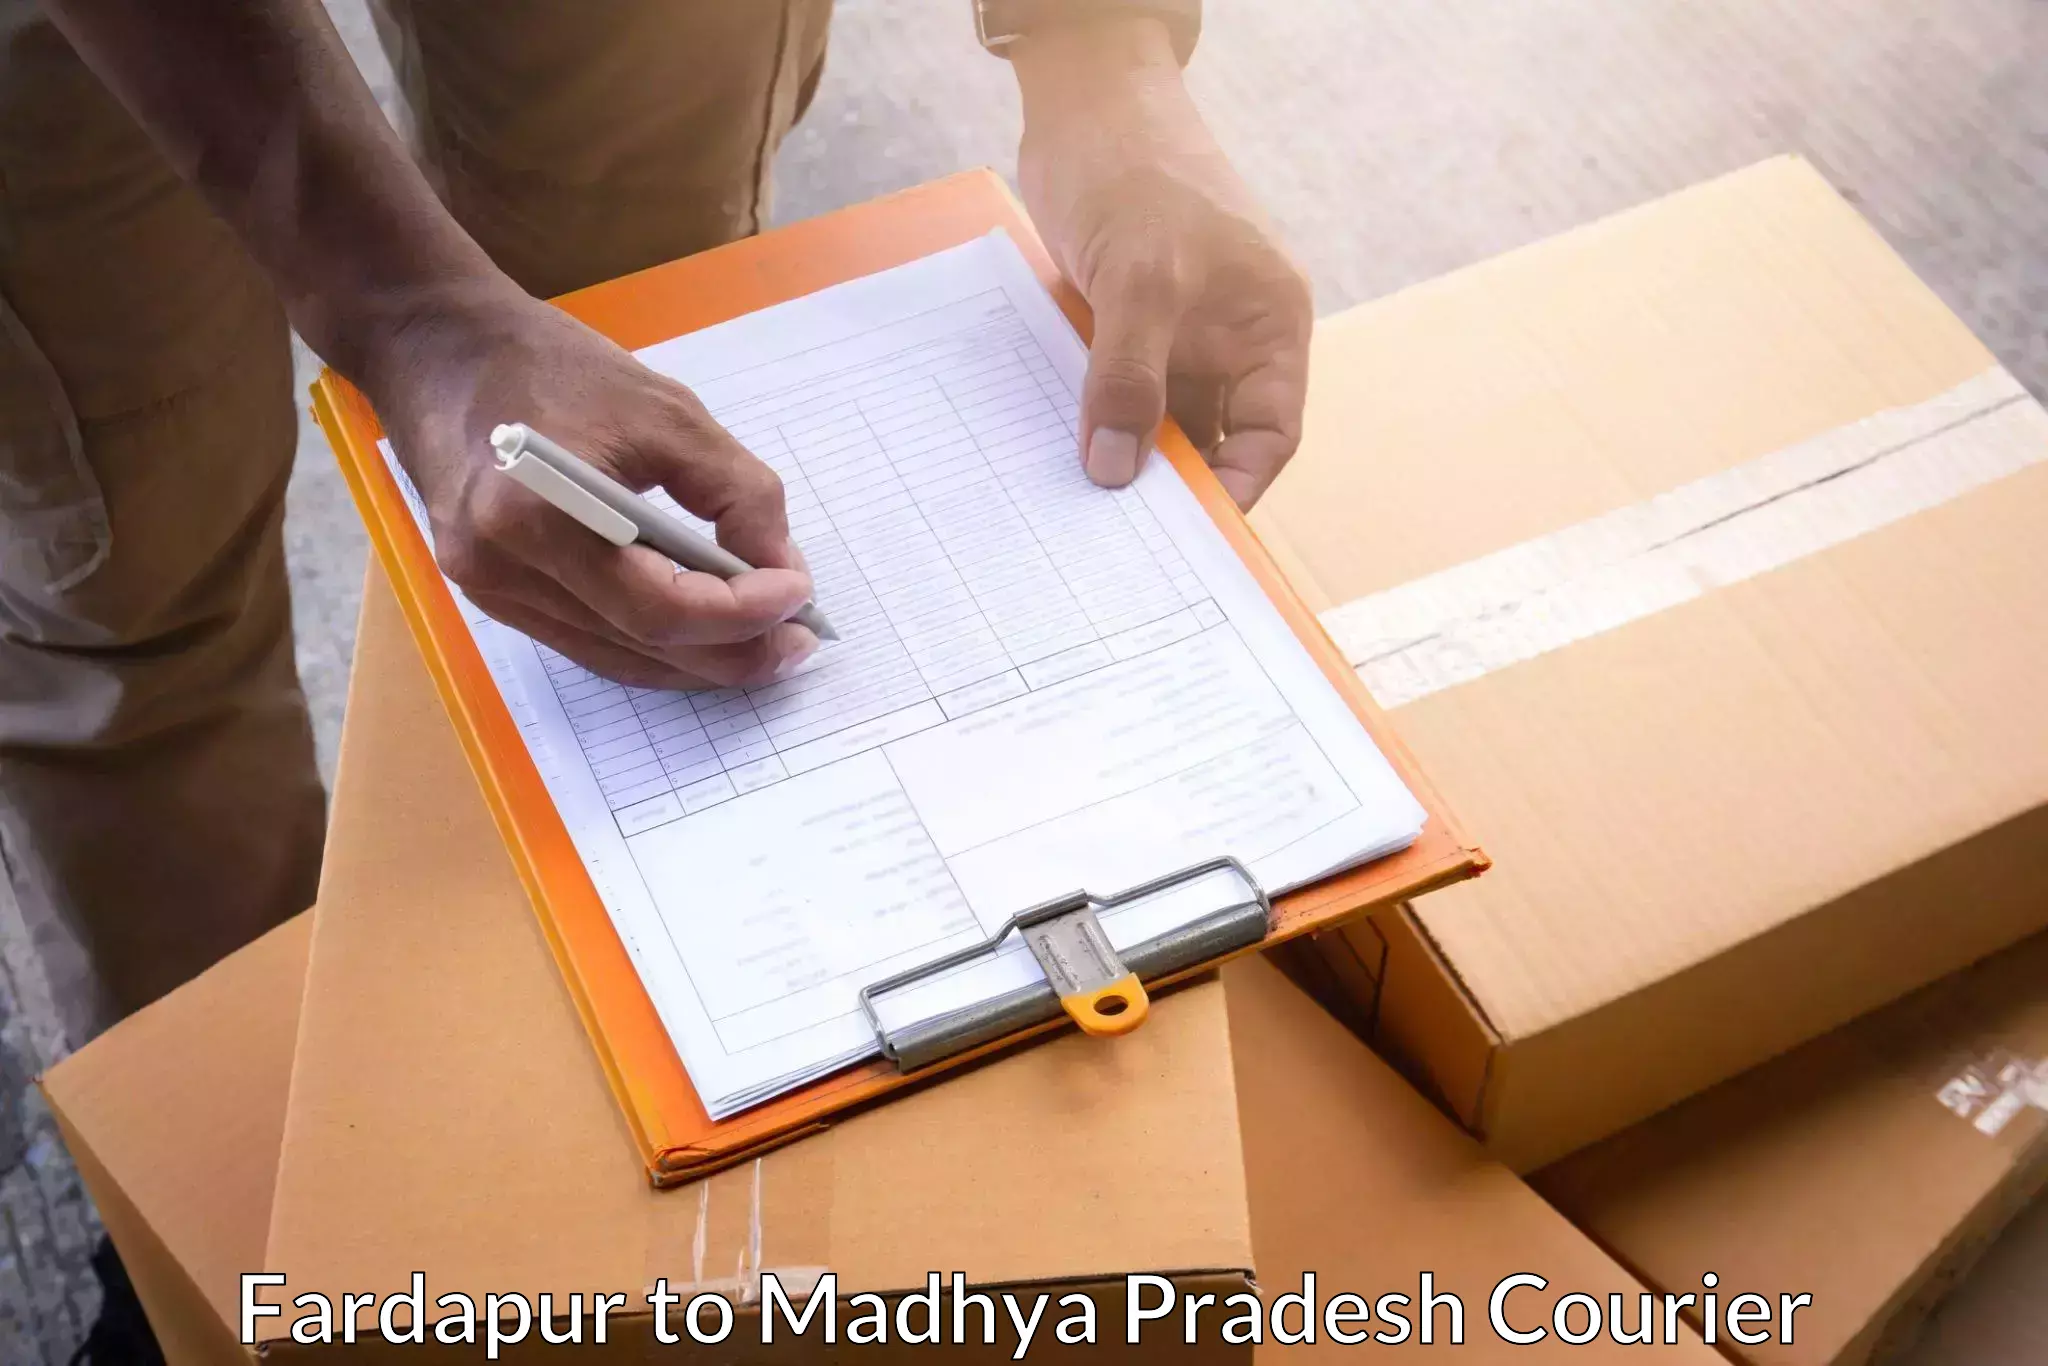 Reliable logistics providers Fardapur to Alote